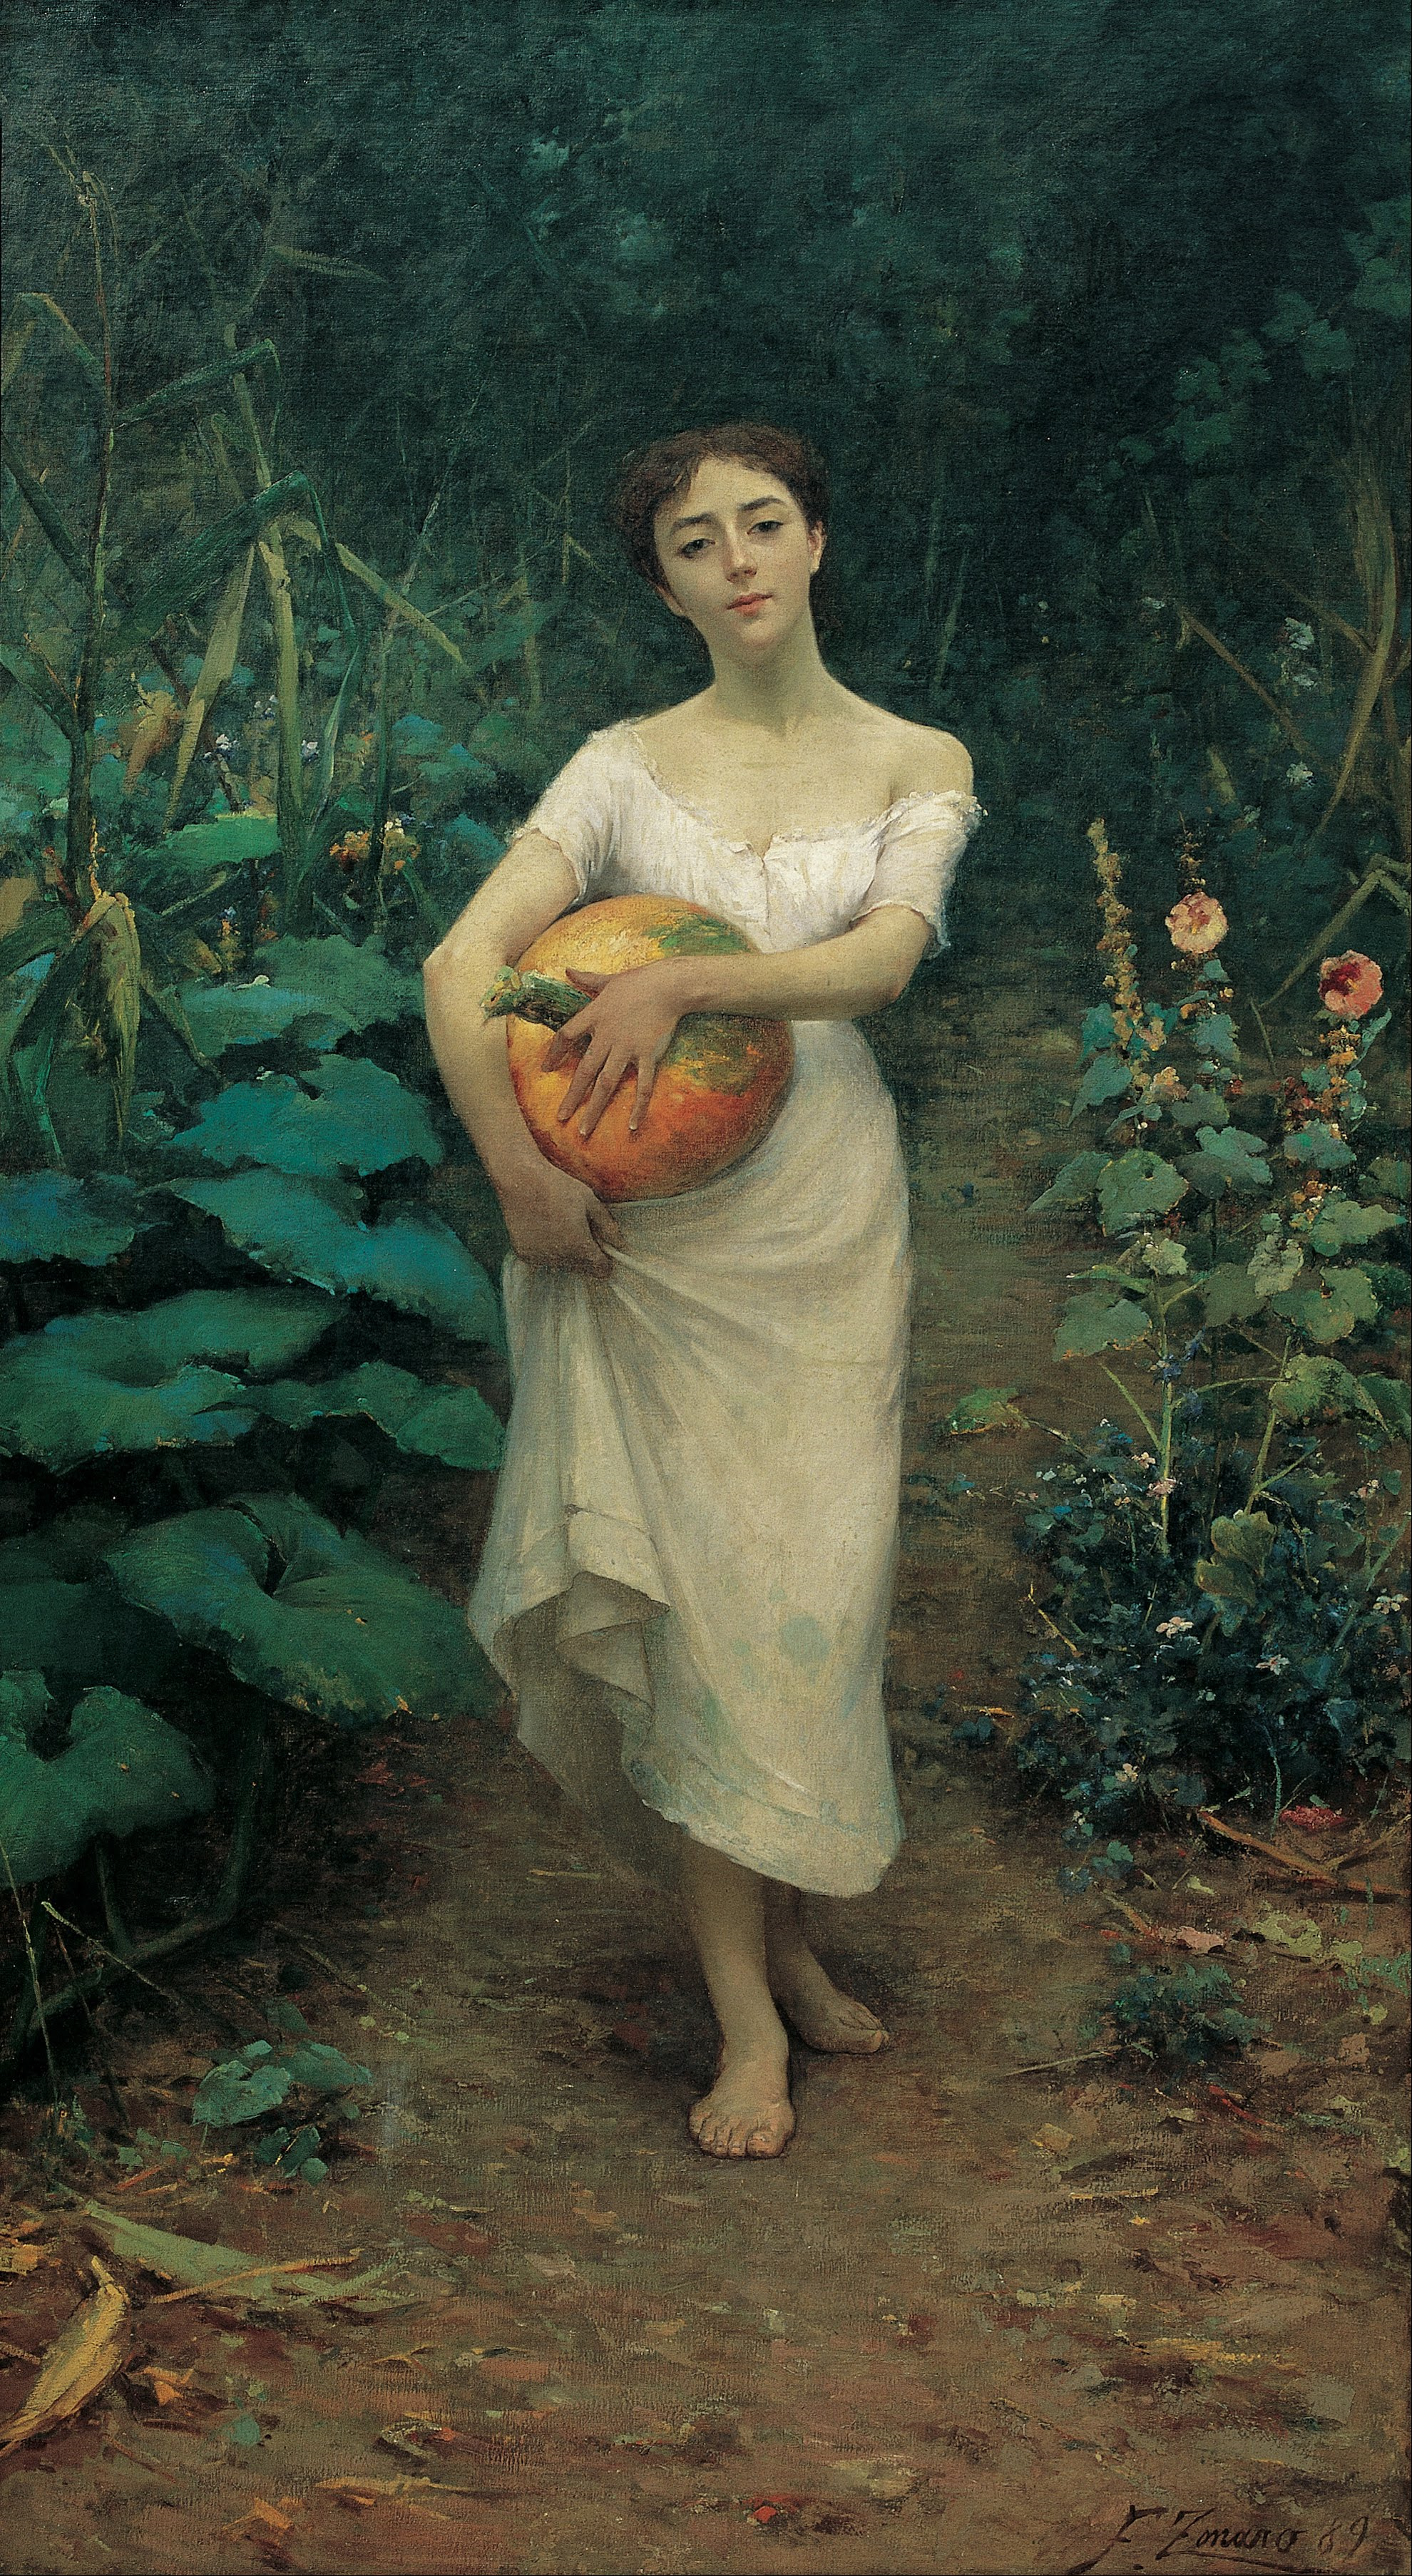 Młoda dziewczyna niosąca dynię by Fausto Zonaro - 1889 - 137 x 245 cm 